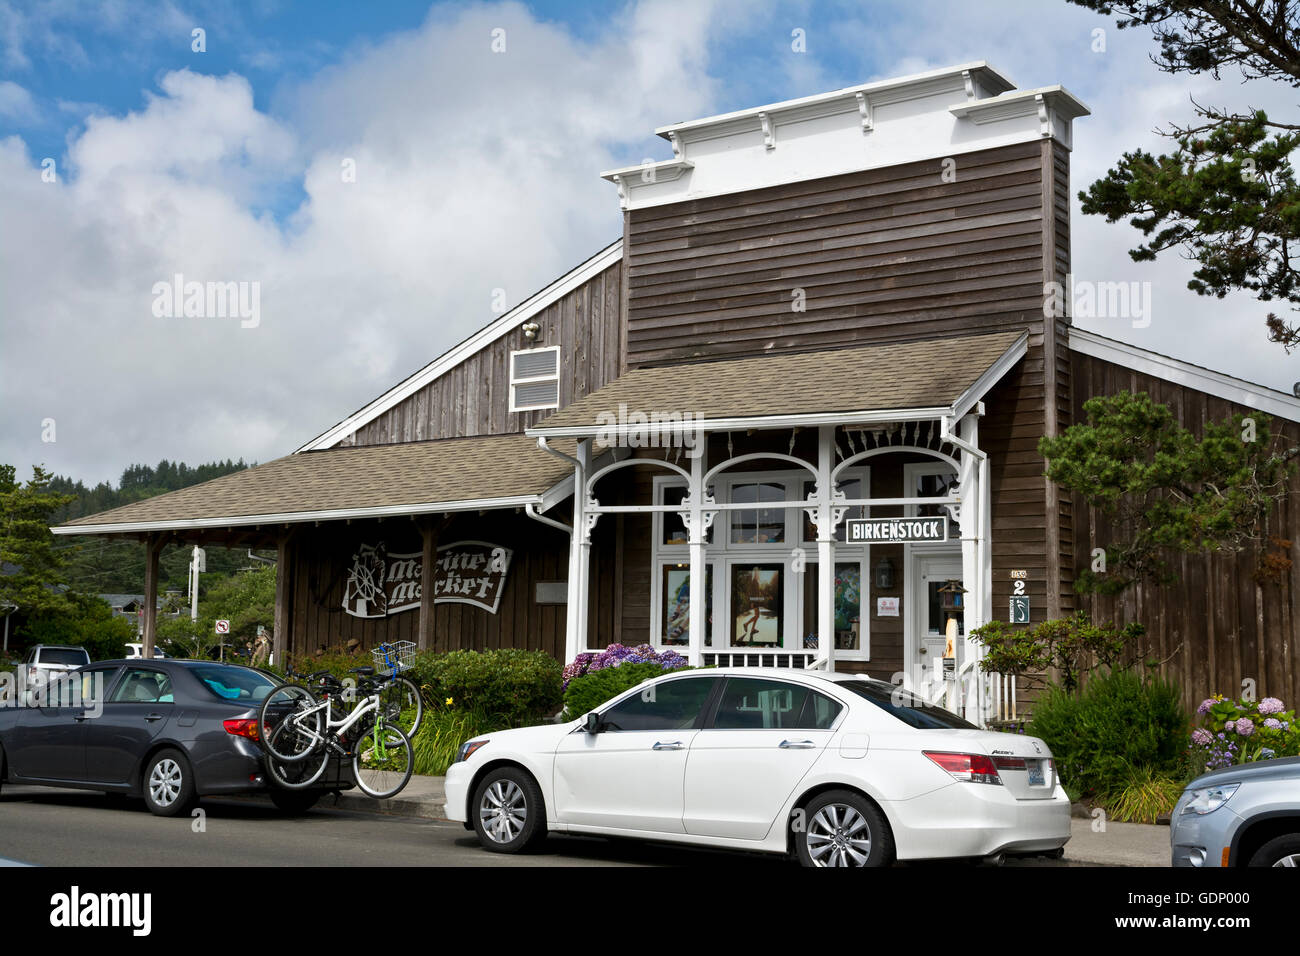 Birkenstock store in Cannon Beach, Oregon Stock Photo - Alamy